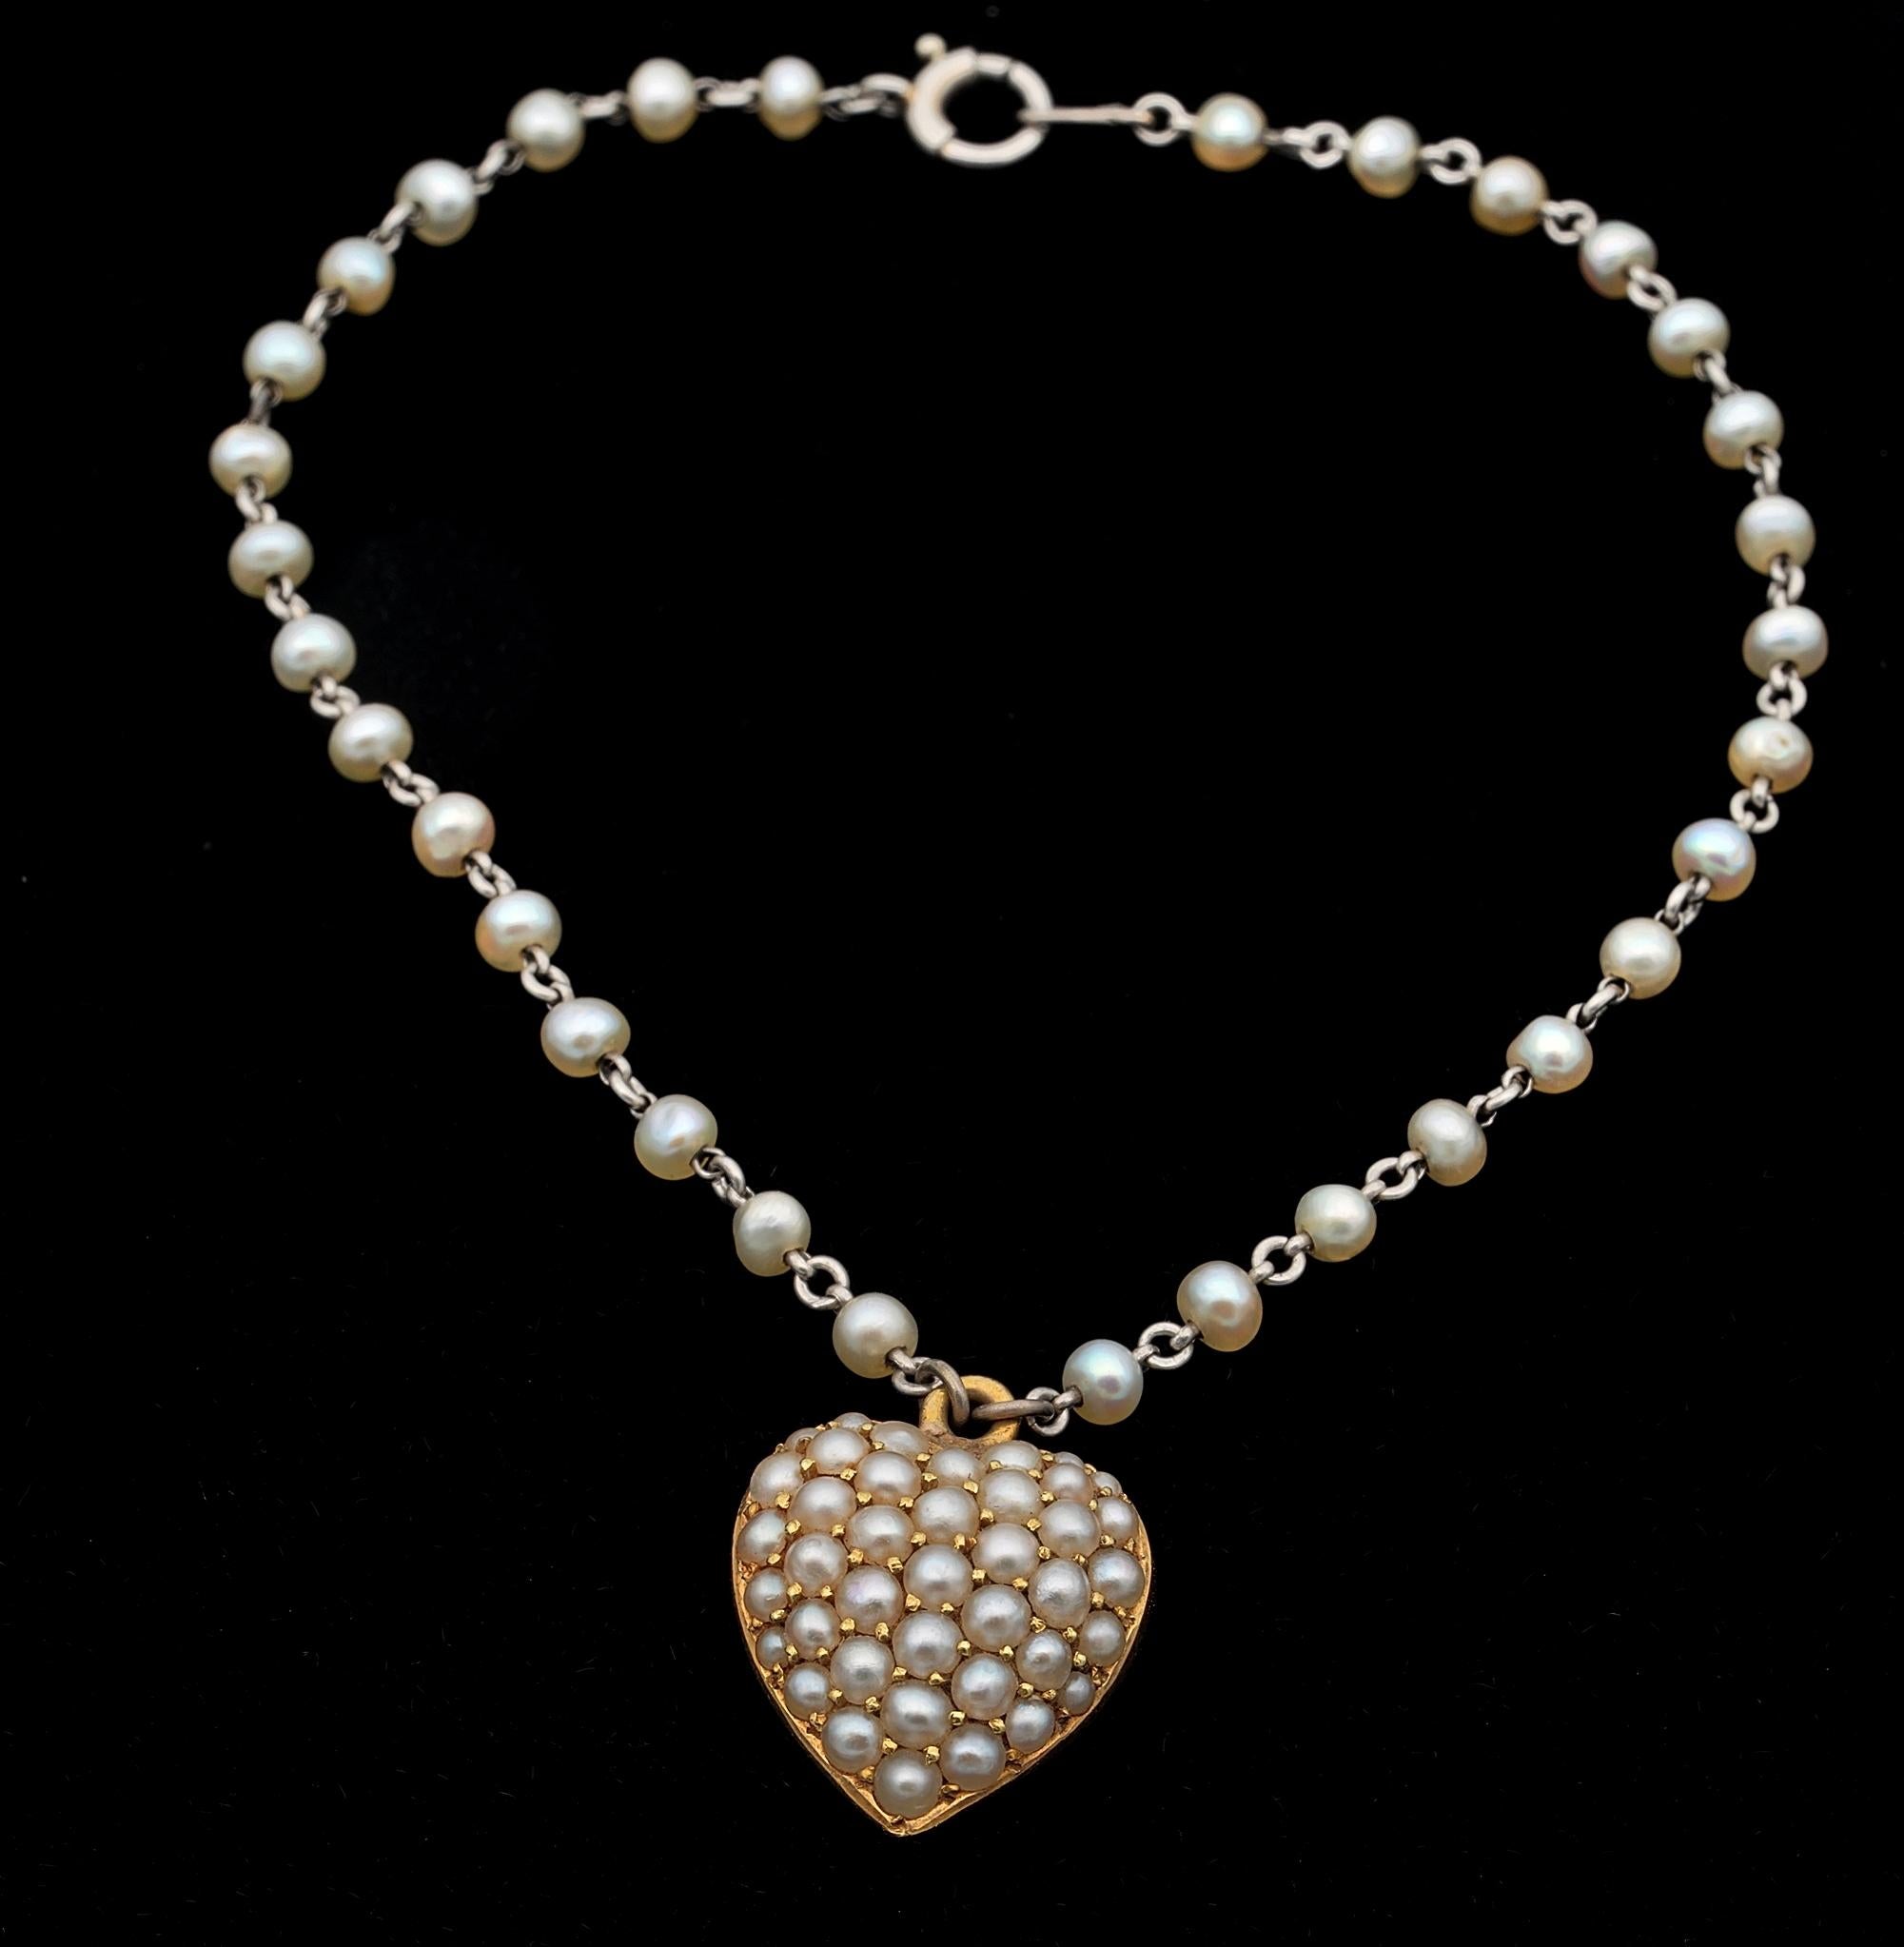 Le romantisme victorien
Ce charmant petit bracelet de l'époque victorienne est composé d'un cœur en or massif de 15 carats - marqué - suspendu à une chaîne en platine entrecoupée de perles naturelles.
Le cœur doux est un motif bouffant dont le